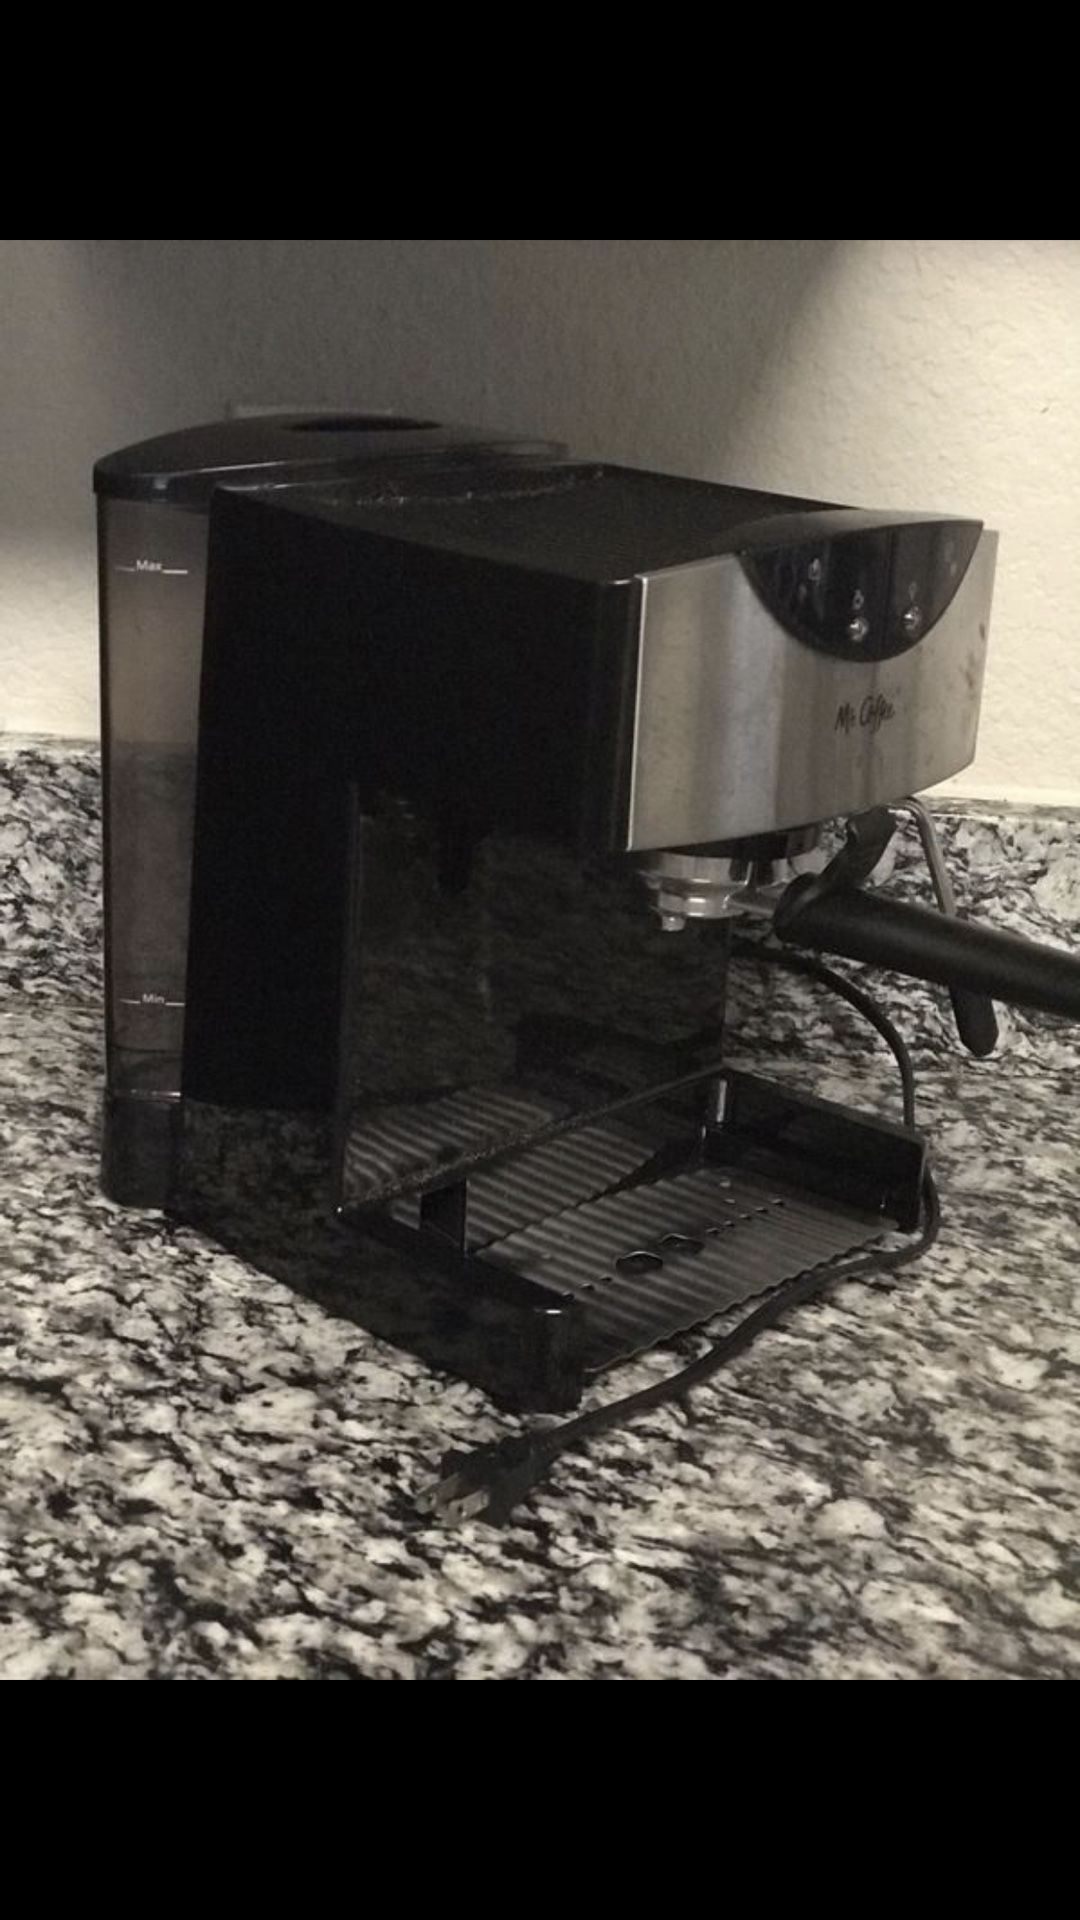 Mr. coffee espresso maker